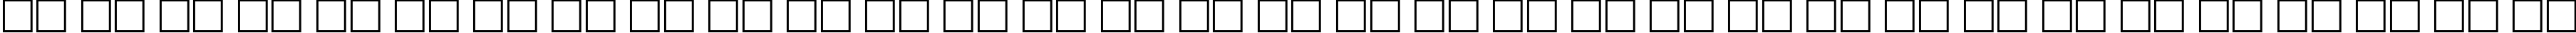 Пример написания русского алфавита шрифтом ZurichCalligraphic Italic